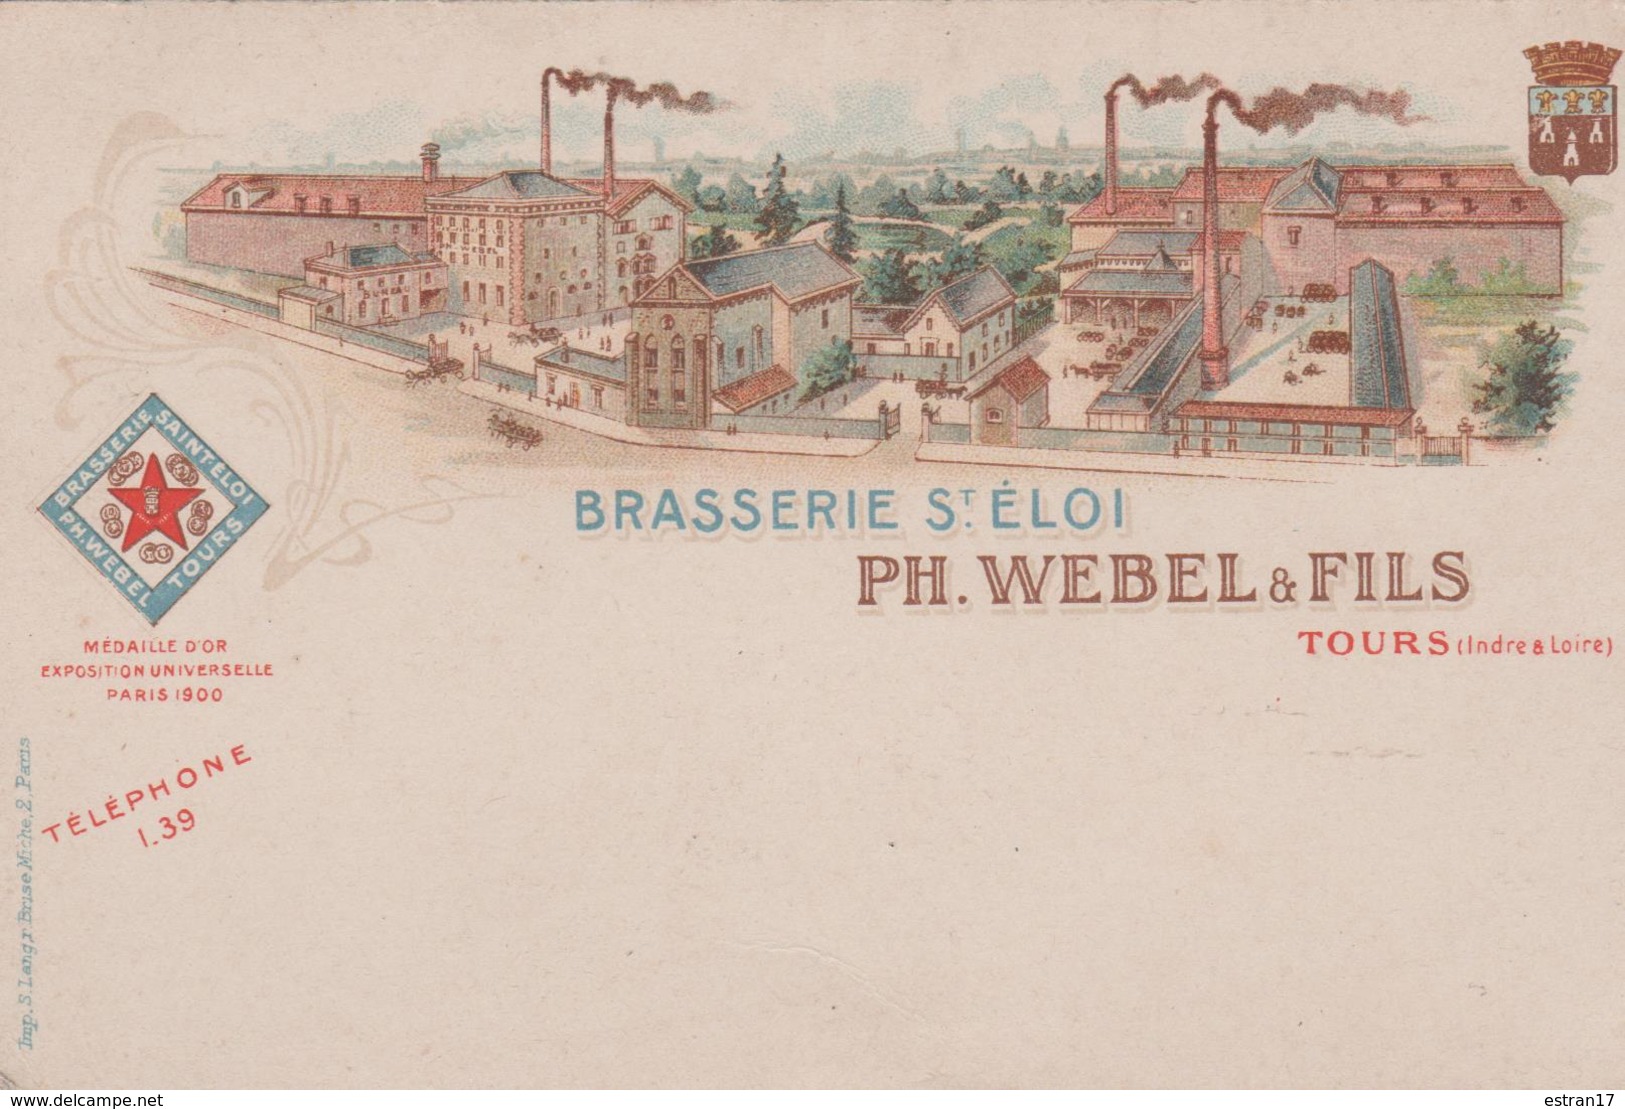 BRASSERIE SAINT-ELOI PH. WEBEL & FILS TOURS - Advertising